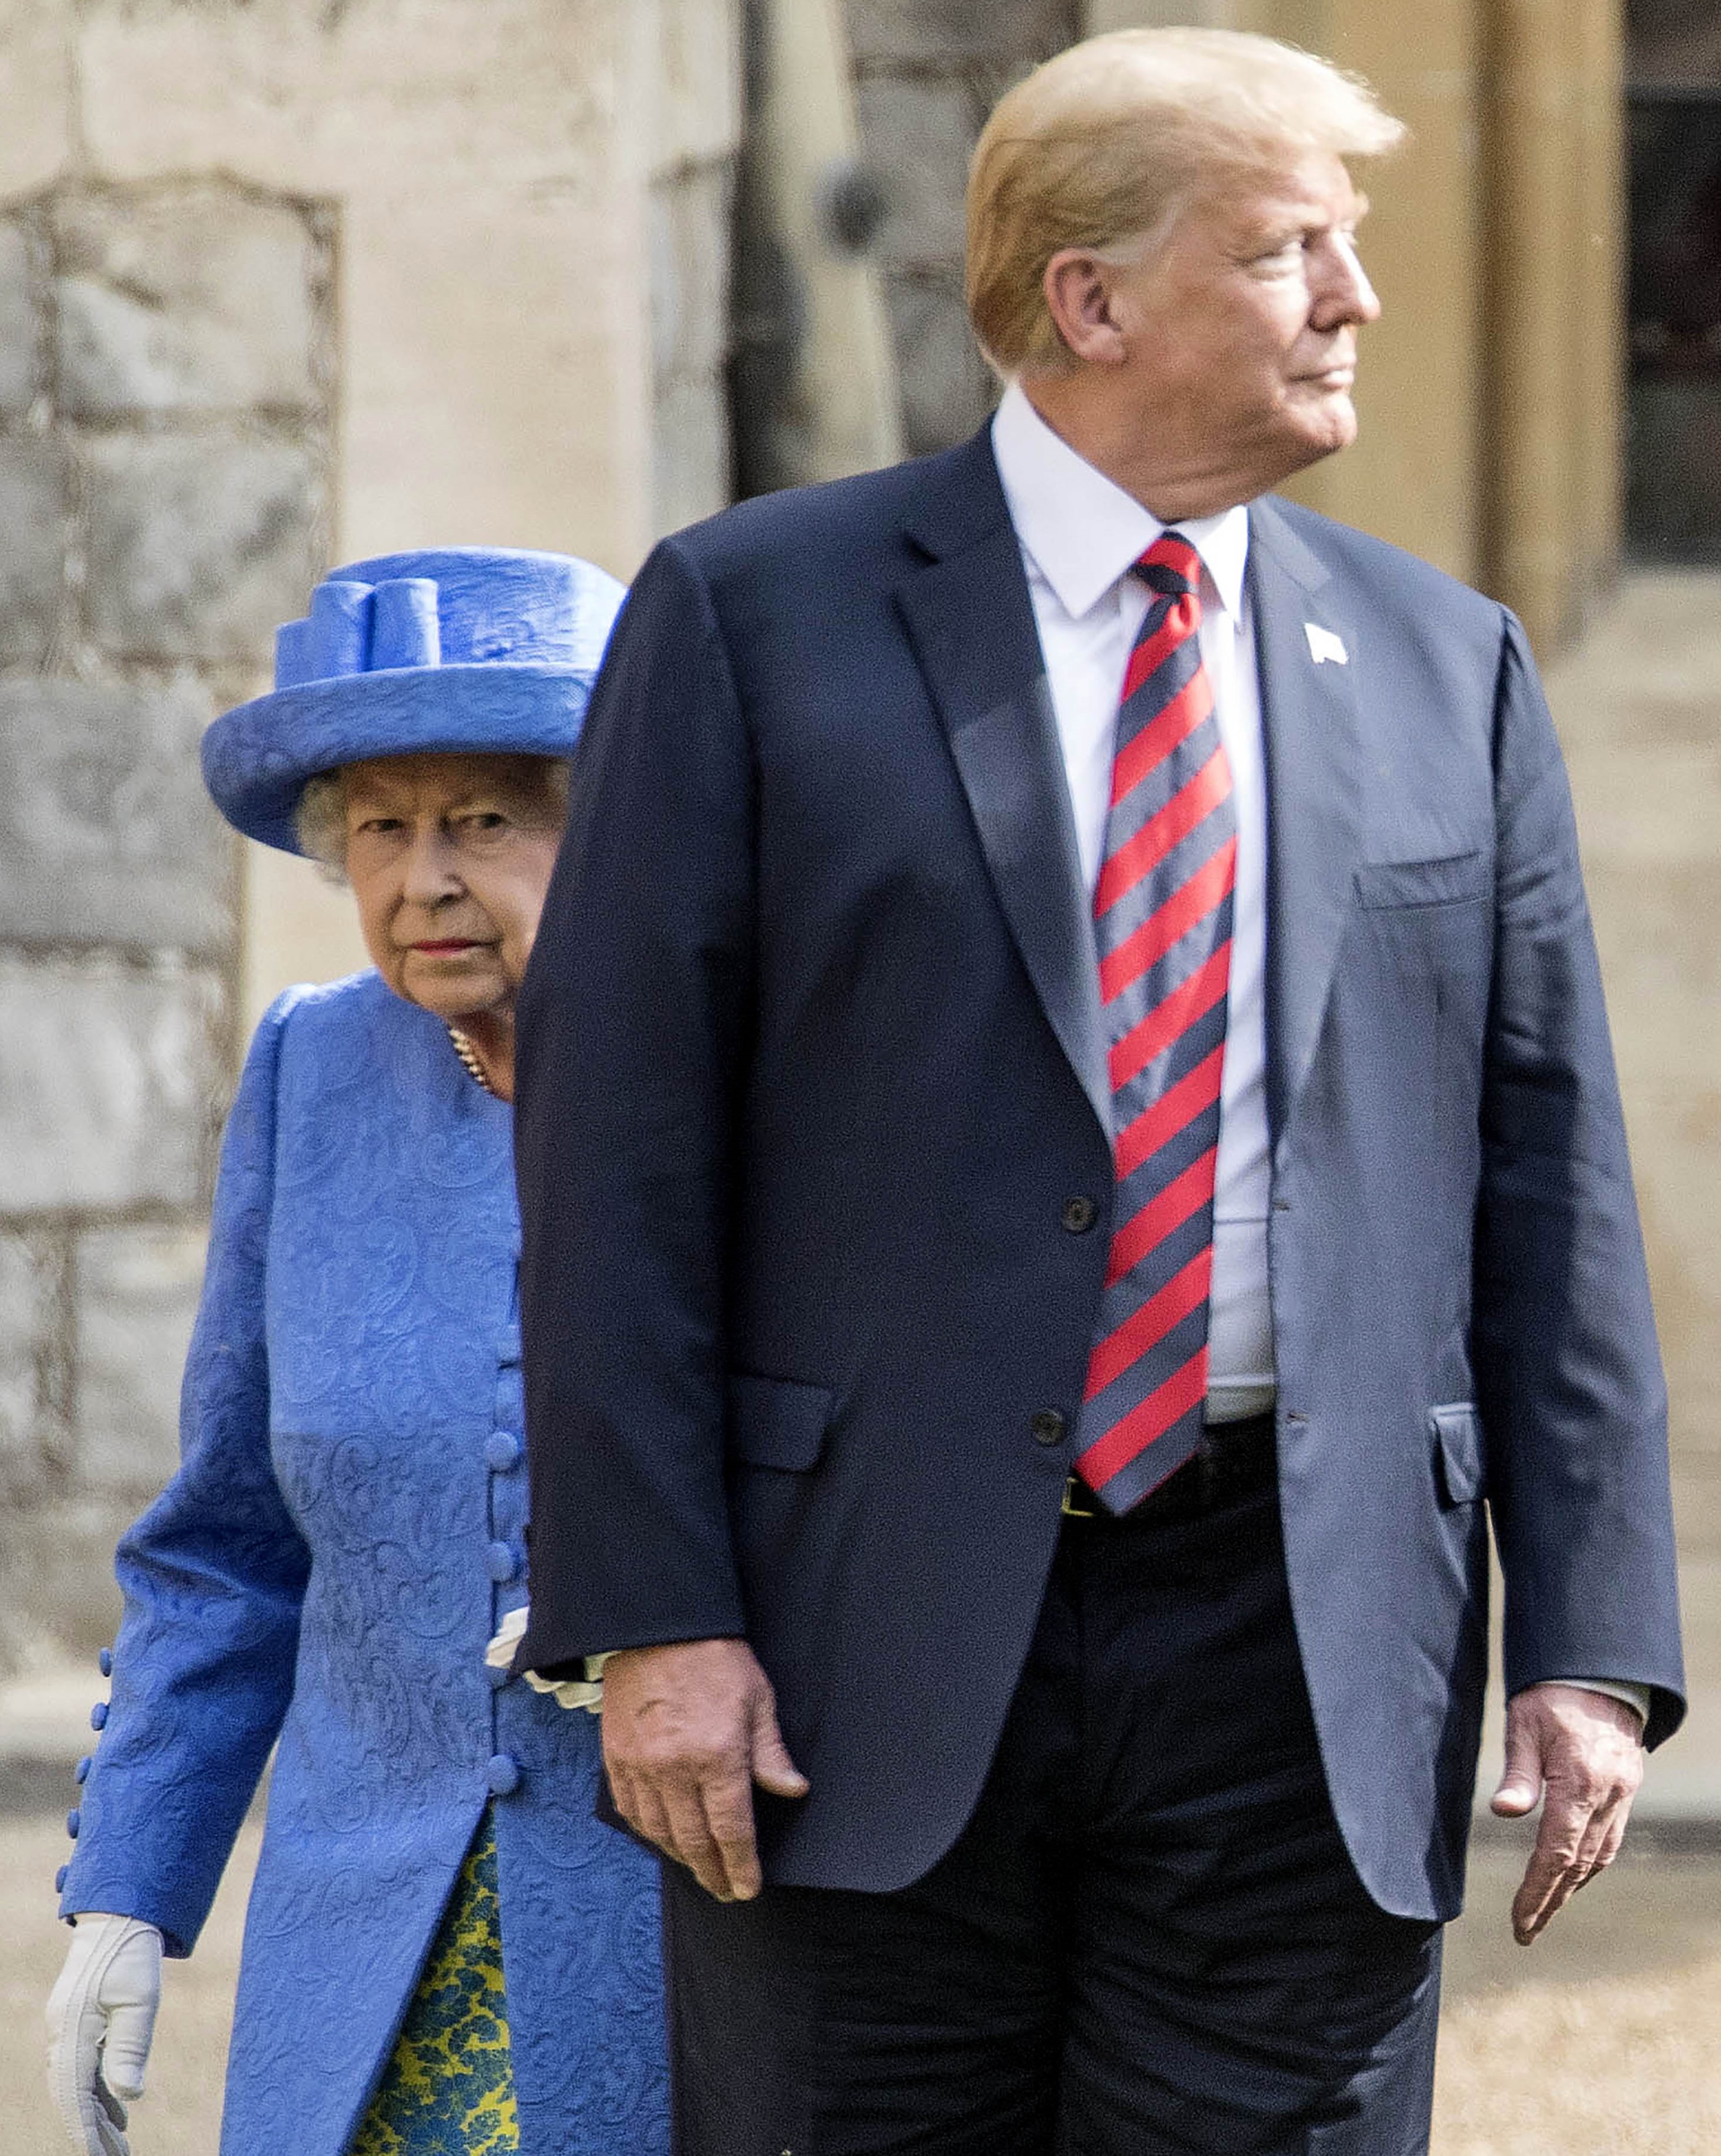 Megérkezett: három napig a királynő vendége lesz Donald Trump - Blikk